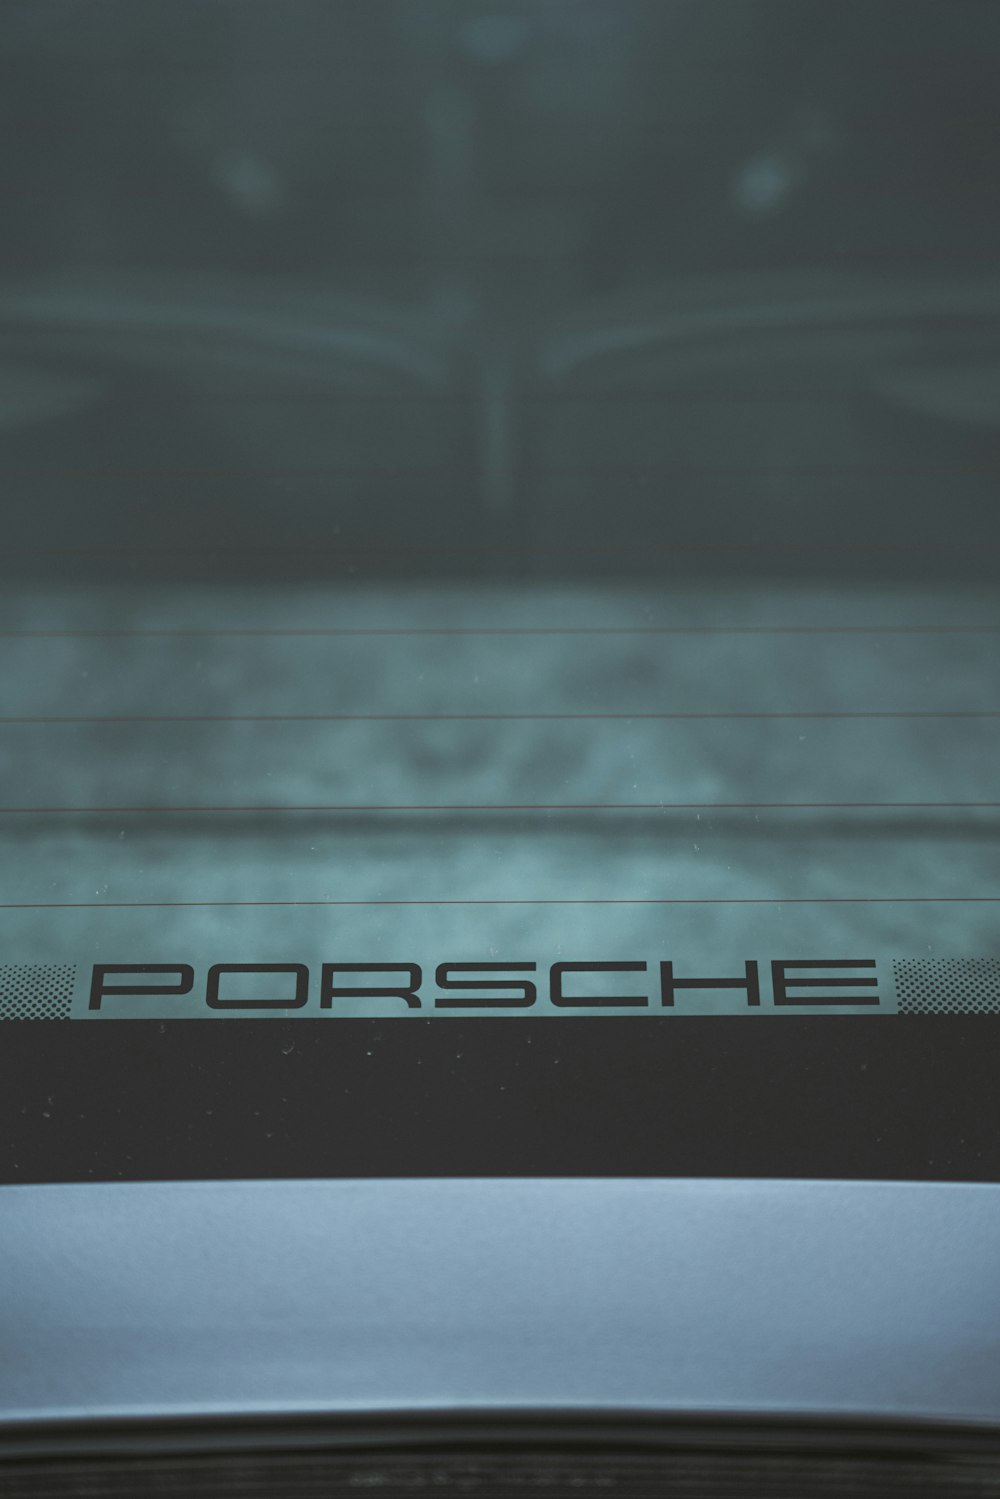 a close up of a porsche logo on a car